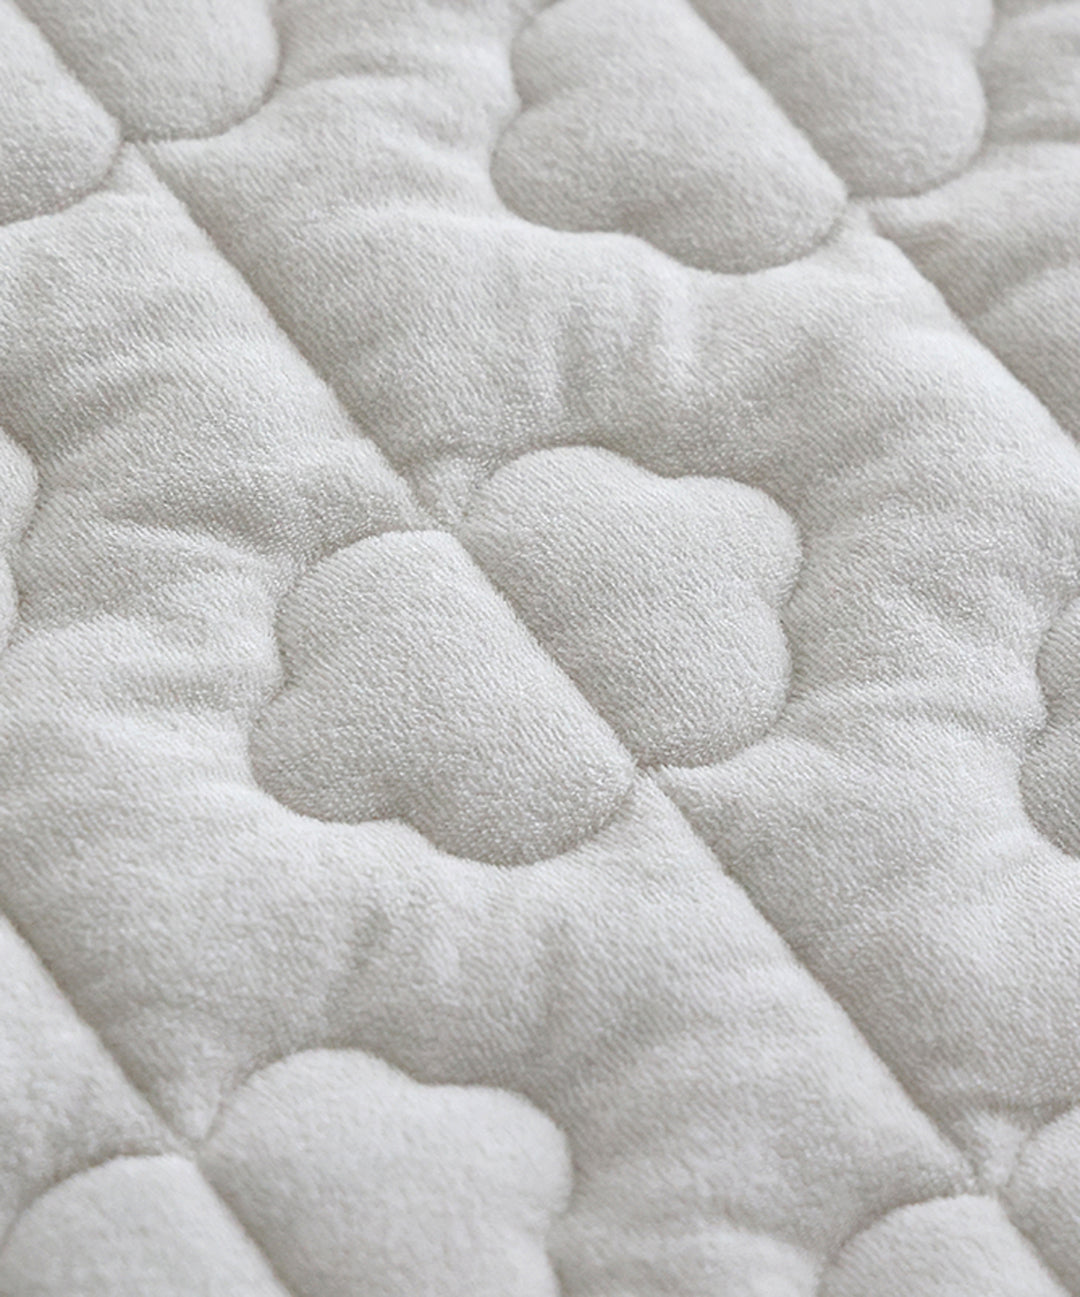 【防水】睡眠玩耍垫专用垫套 120×120cm 毛圈布